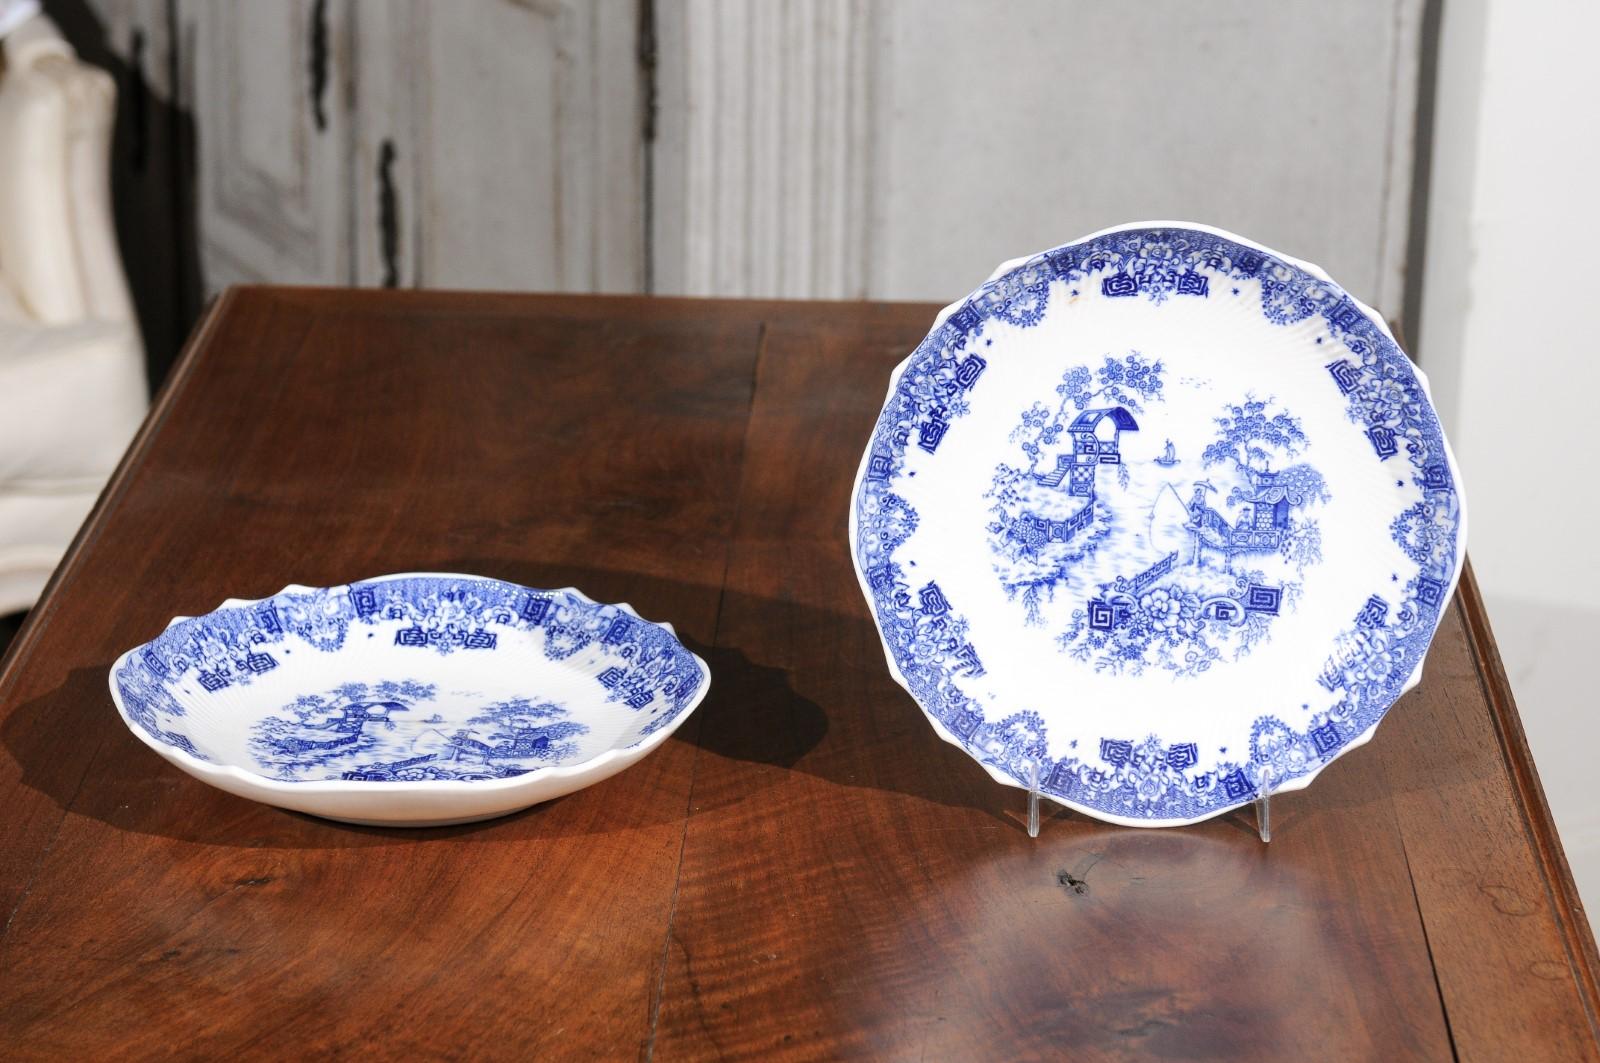 Deux assiettes anglaises d'époque victorienne en bleu et blanc de Copeland Spode, datant de la fin du 19e siècle, avec des motifs de chinoiserie, mises à prix et vendues individuellement. Nées en Angleterre dans les dernières années du XIXe siècle,